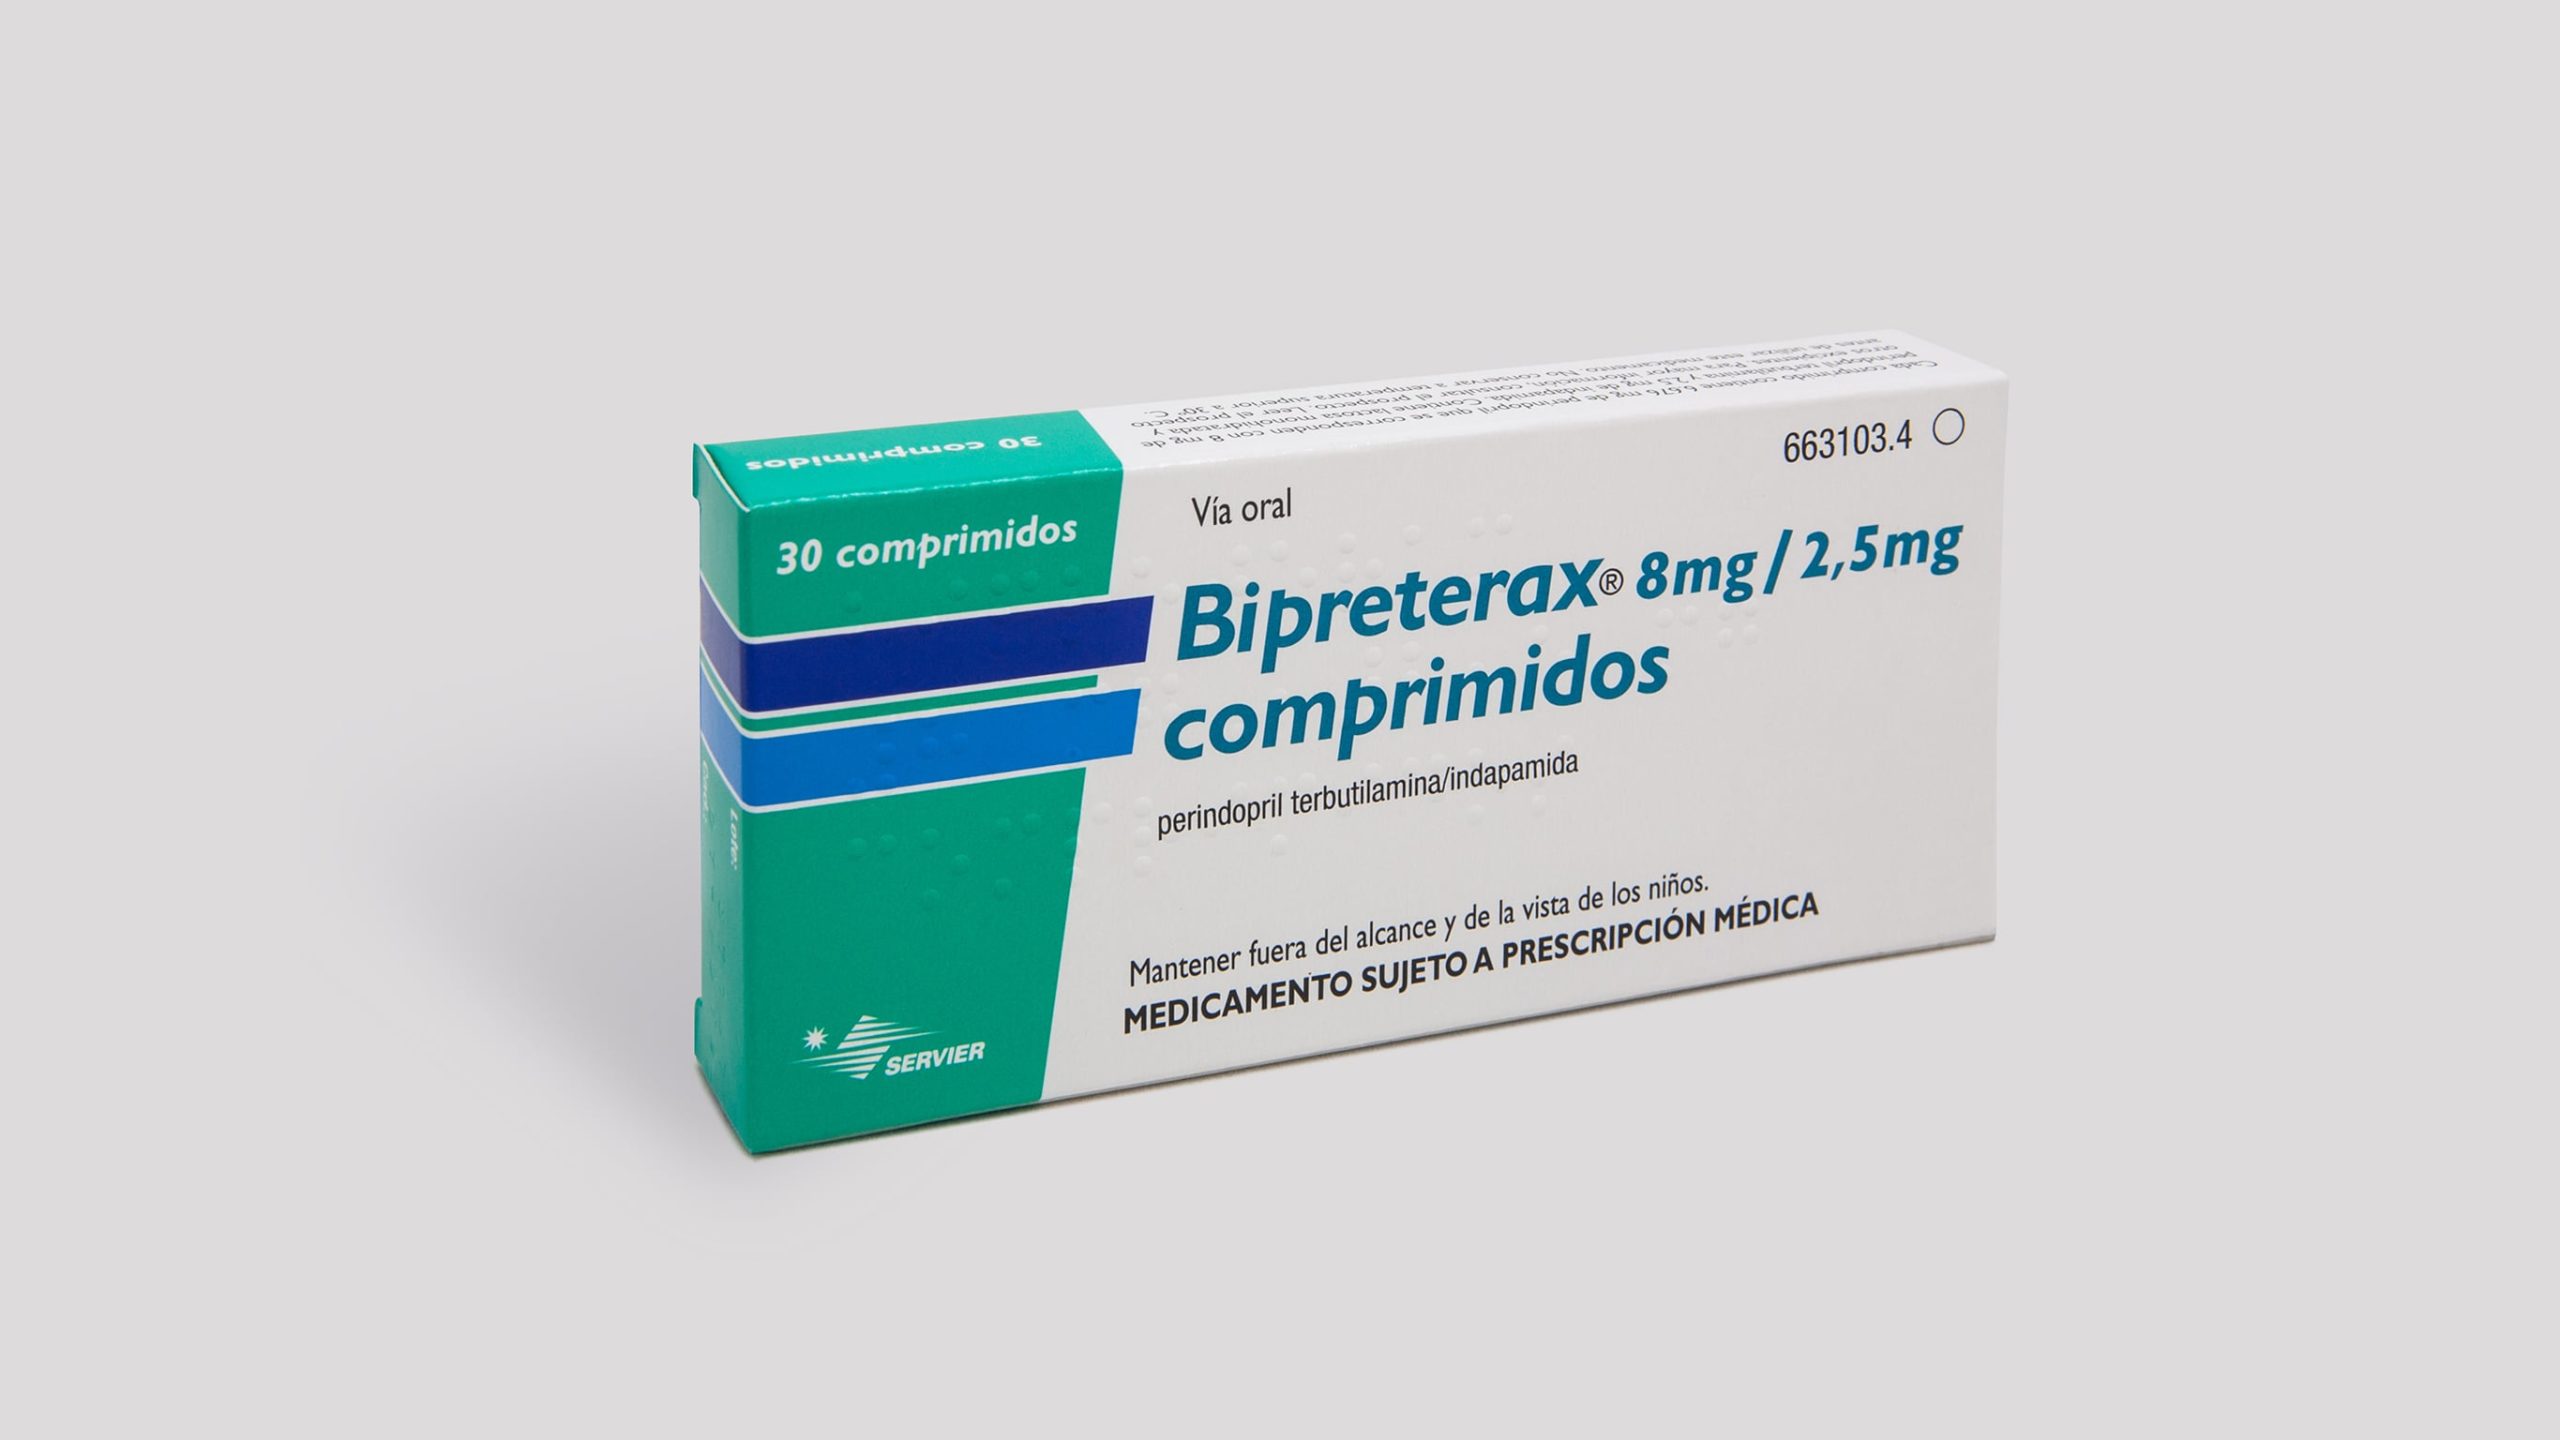 Bipreterax 8 mg/2.5 mg